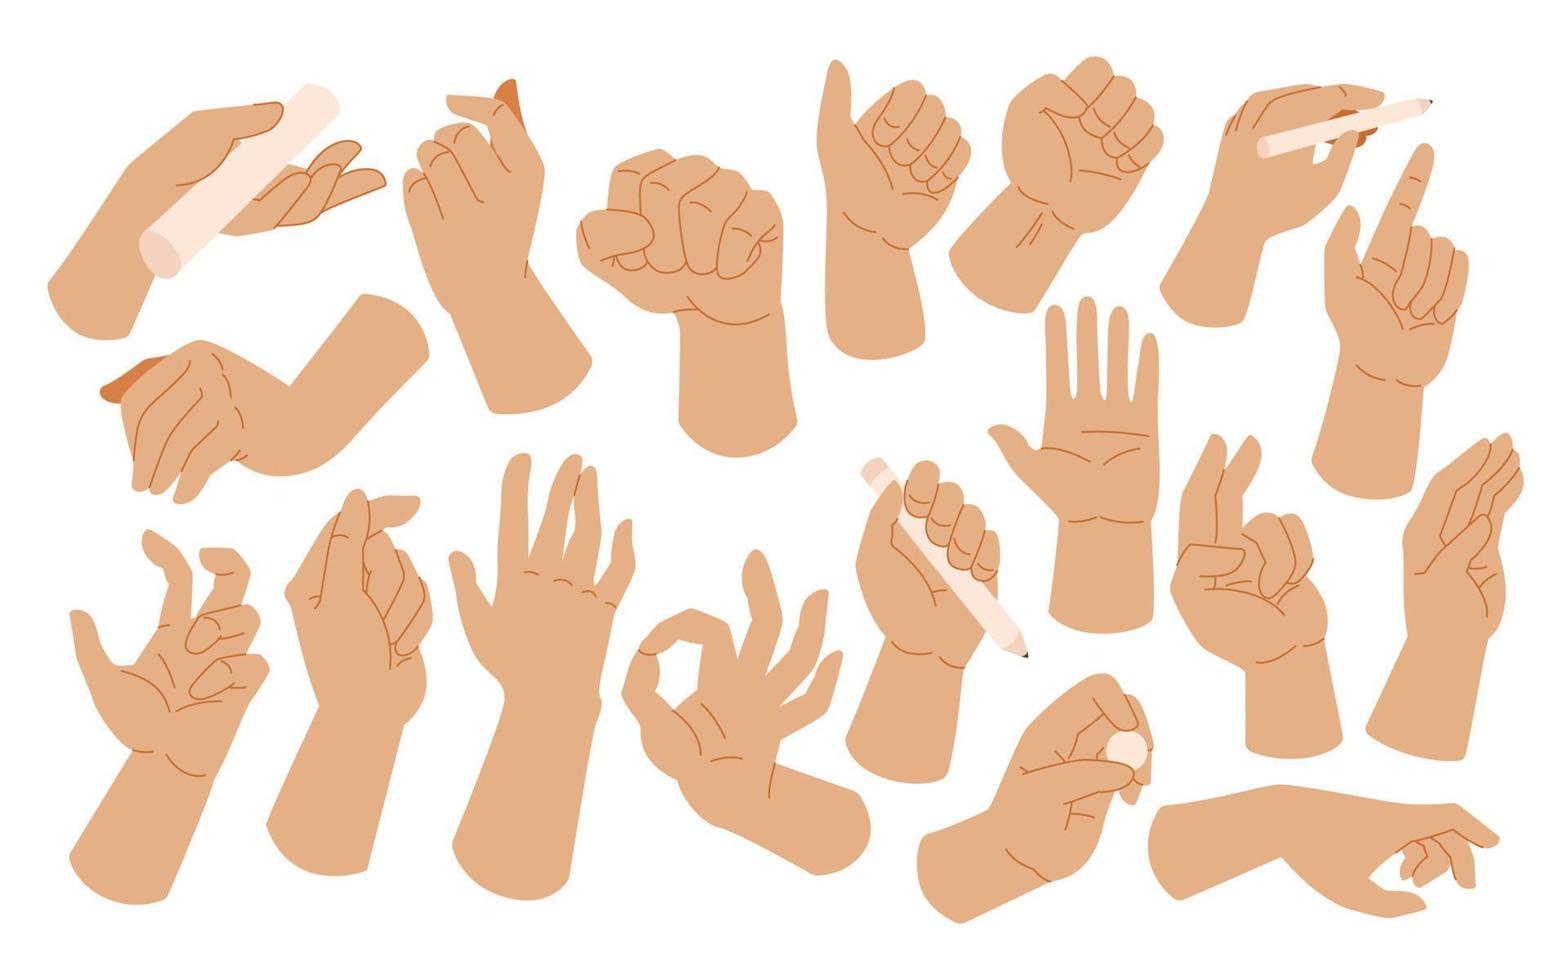 linke hände stellen gesten dar. halten und zeigen gesten, daumen drücken, faust, frieden und daumen hoch. karikatur menschliche handflächen und handgelenkvektorsatz. Kommunikation oder Sprechen für Boten. Tag der Linkshänder vektor